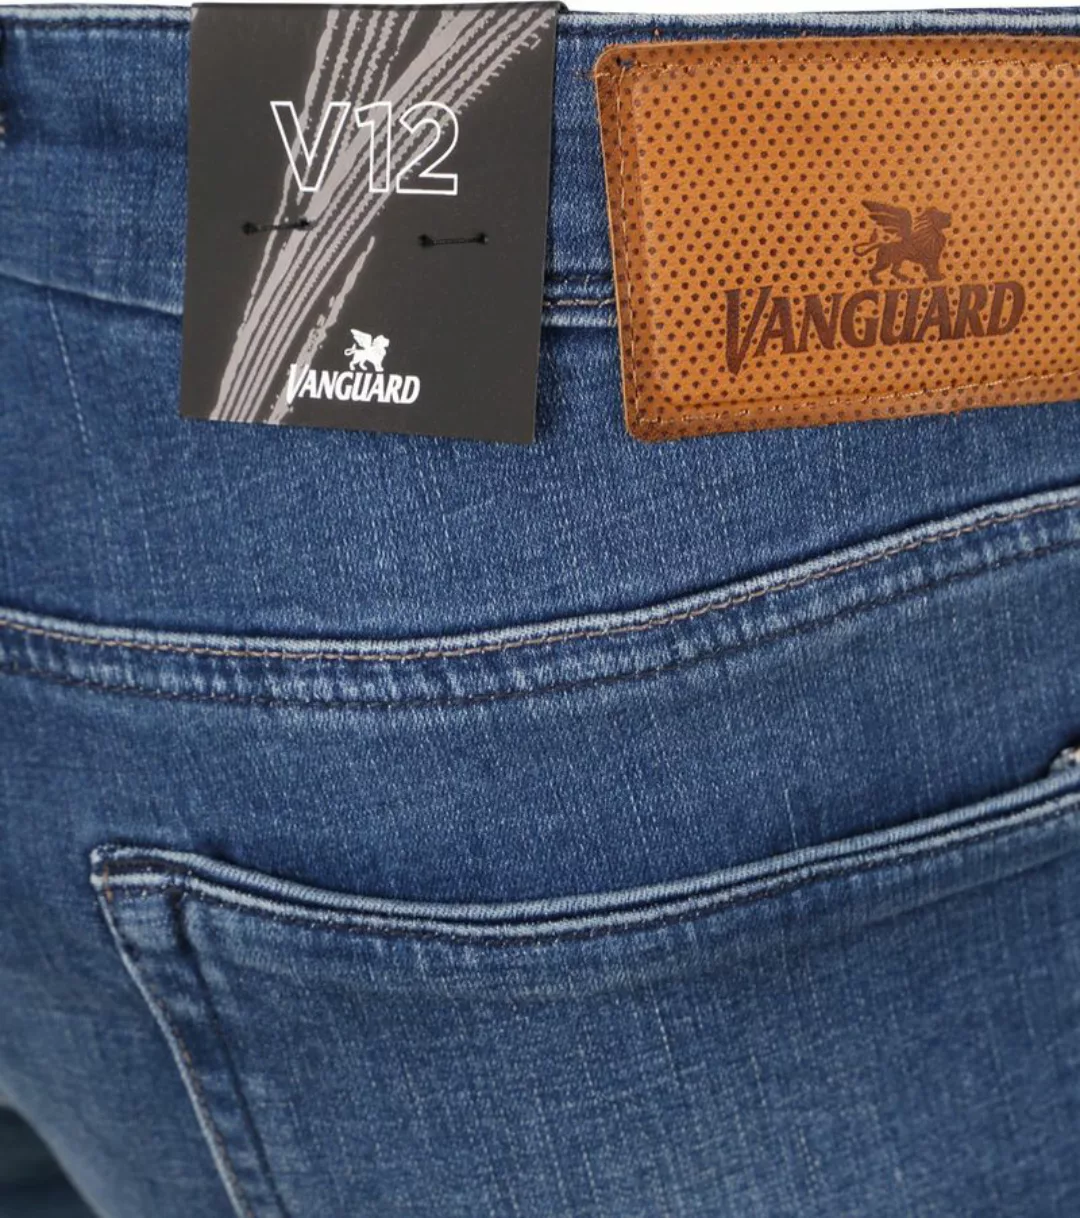 Vanguard Jeans V12 Rider Blau FIB - Größe W 34 - L 34 günstig online kaufen